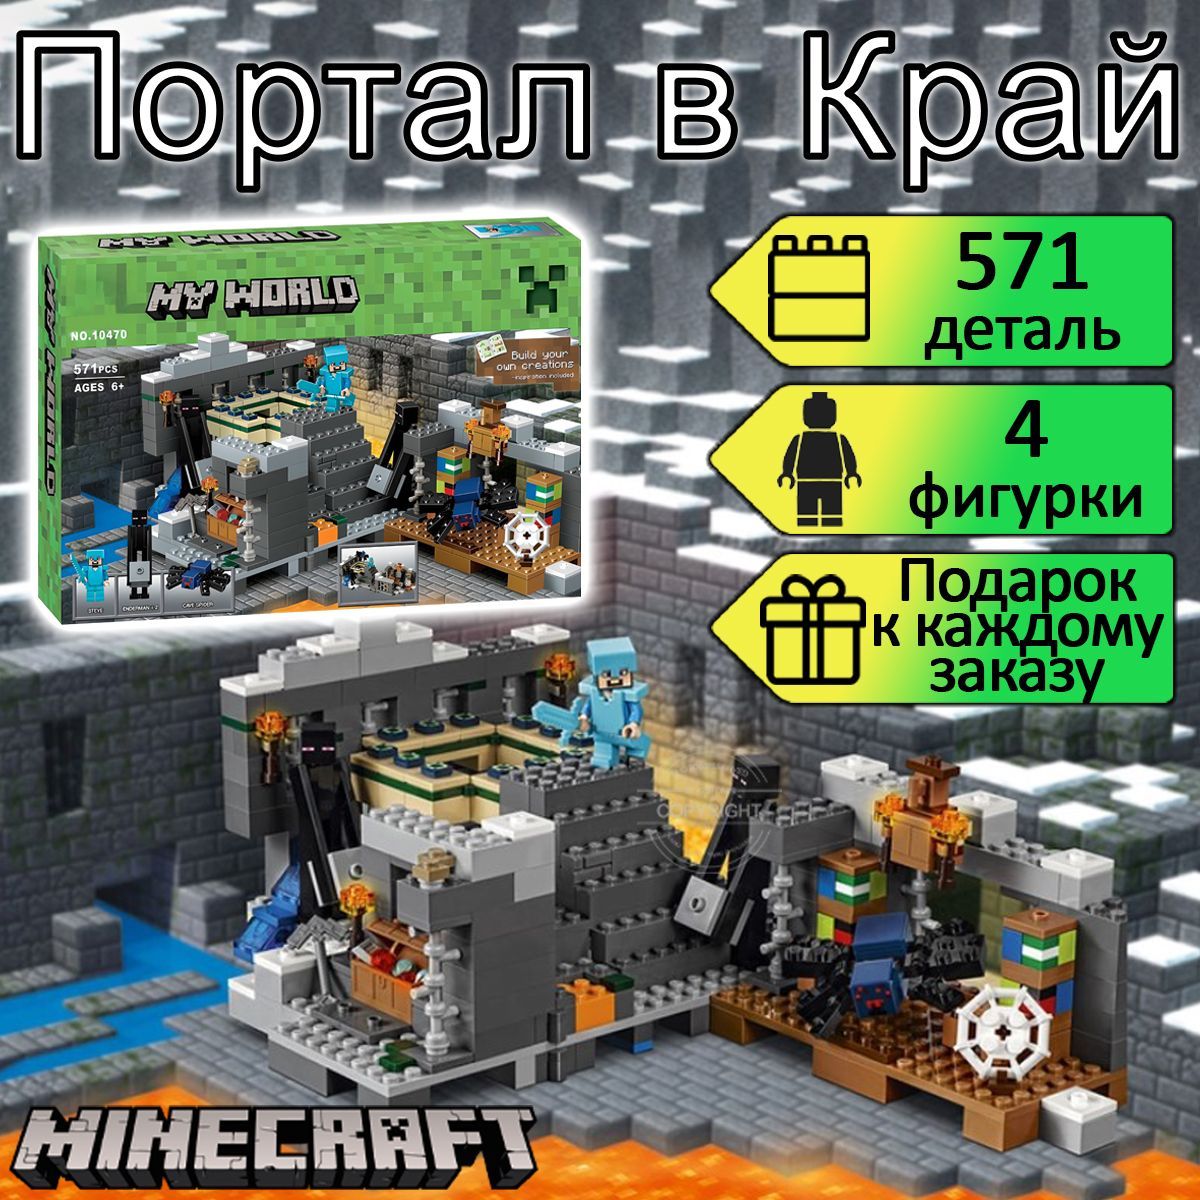 Как сделать портал в Край в Creative Minecraft - natali-fashion.ru